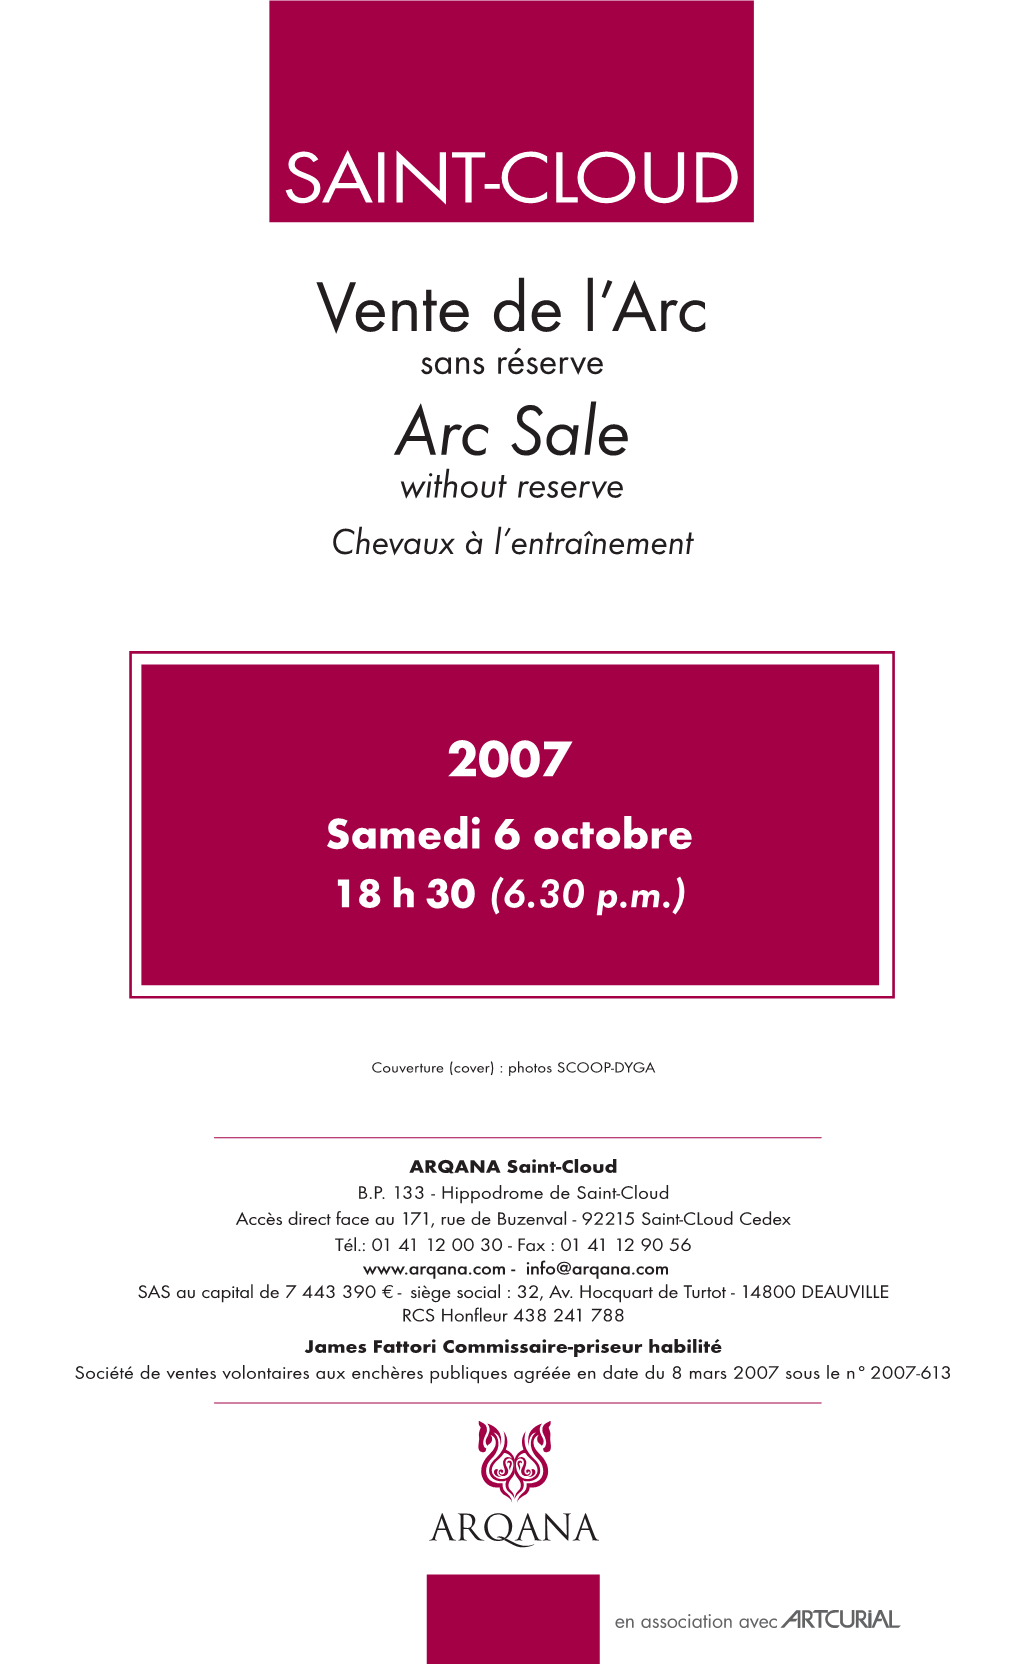 SAINT-CLOUD Vente De L’Arc Sans Réserve Arc Sale Without Reserve Chevaux À L’Entraînement